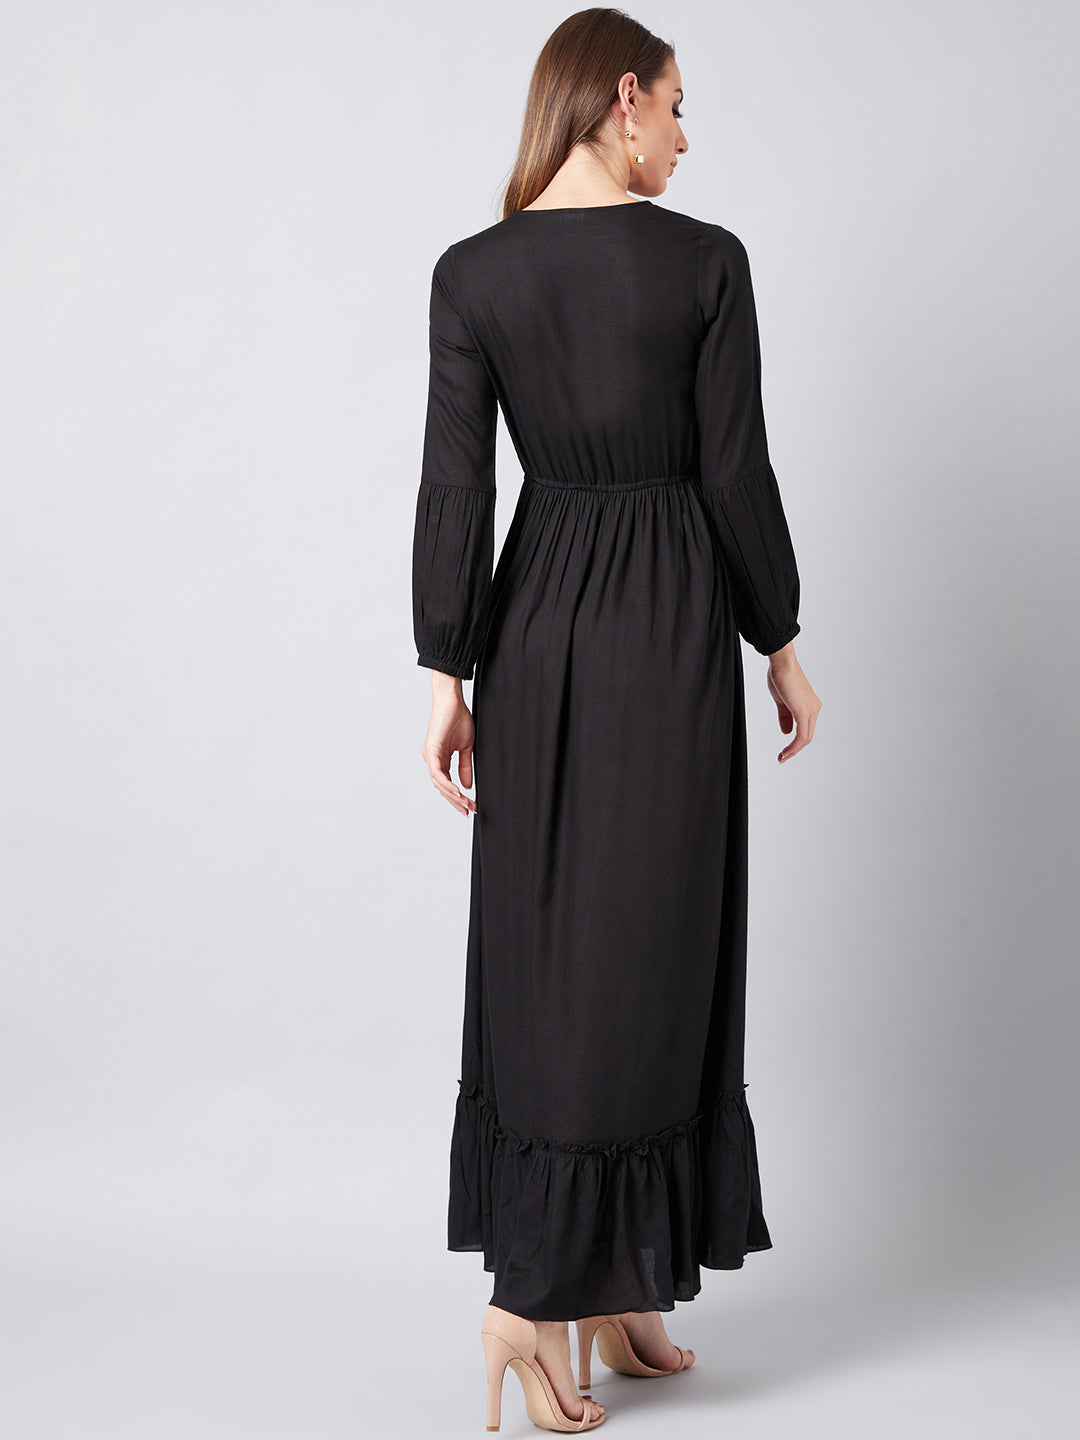 Athena Women Black Embroidered Maxi Dress - Athena Lifestyle